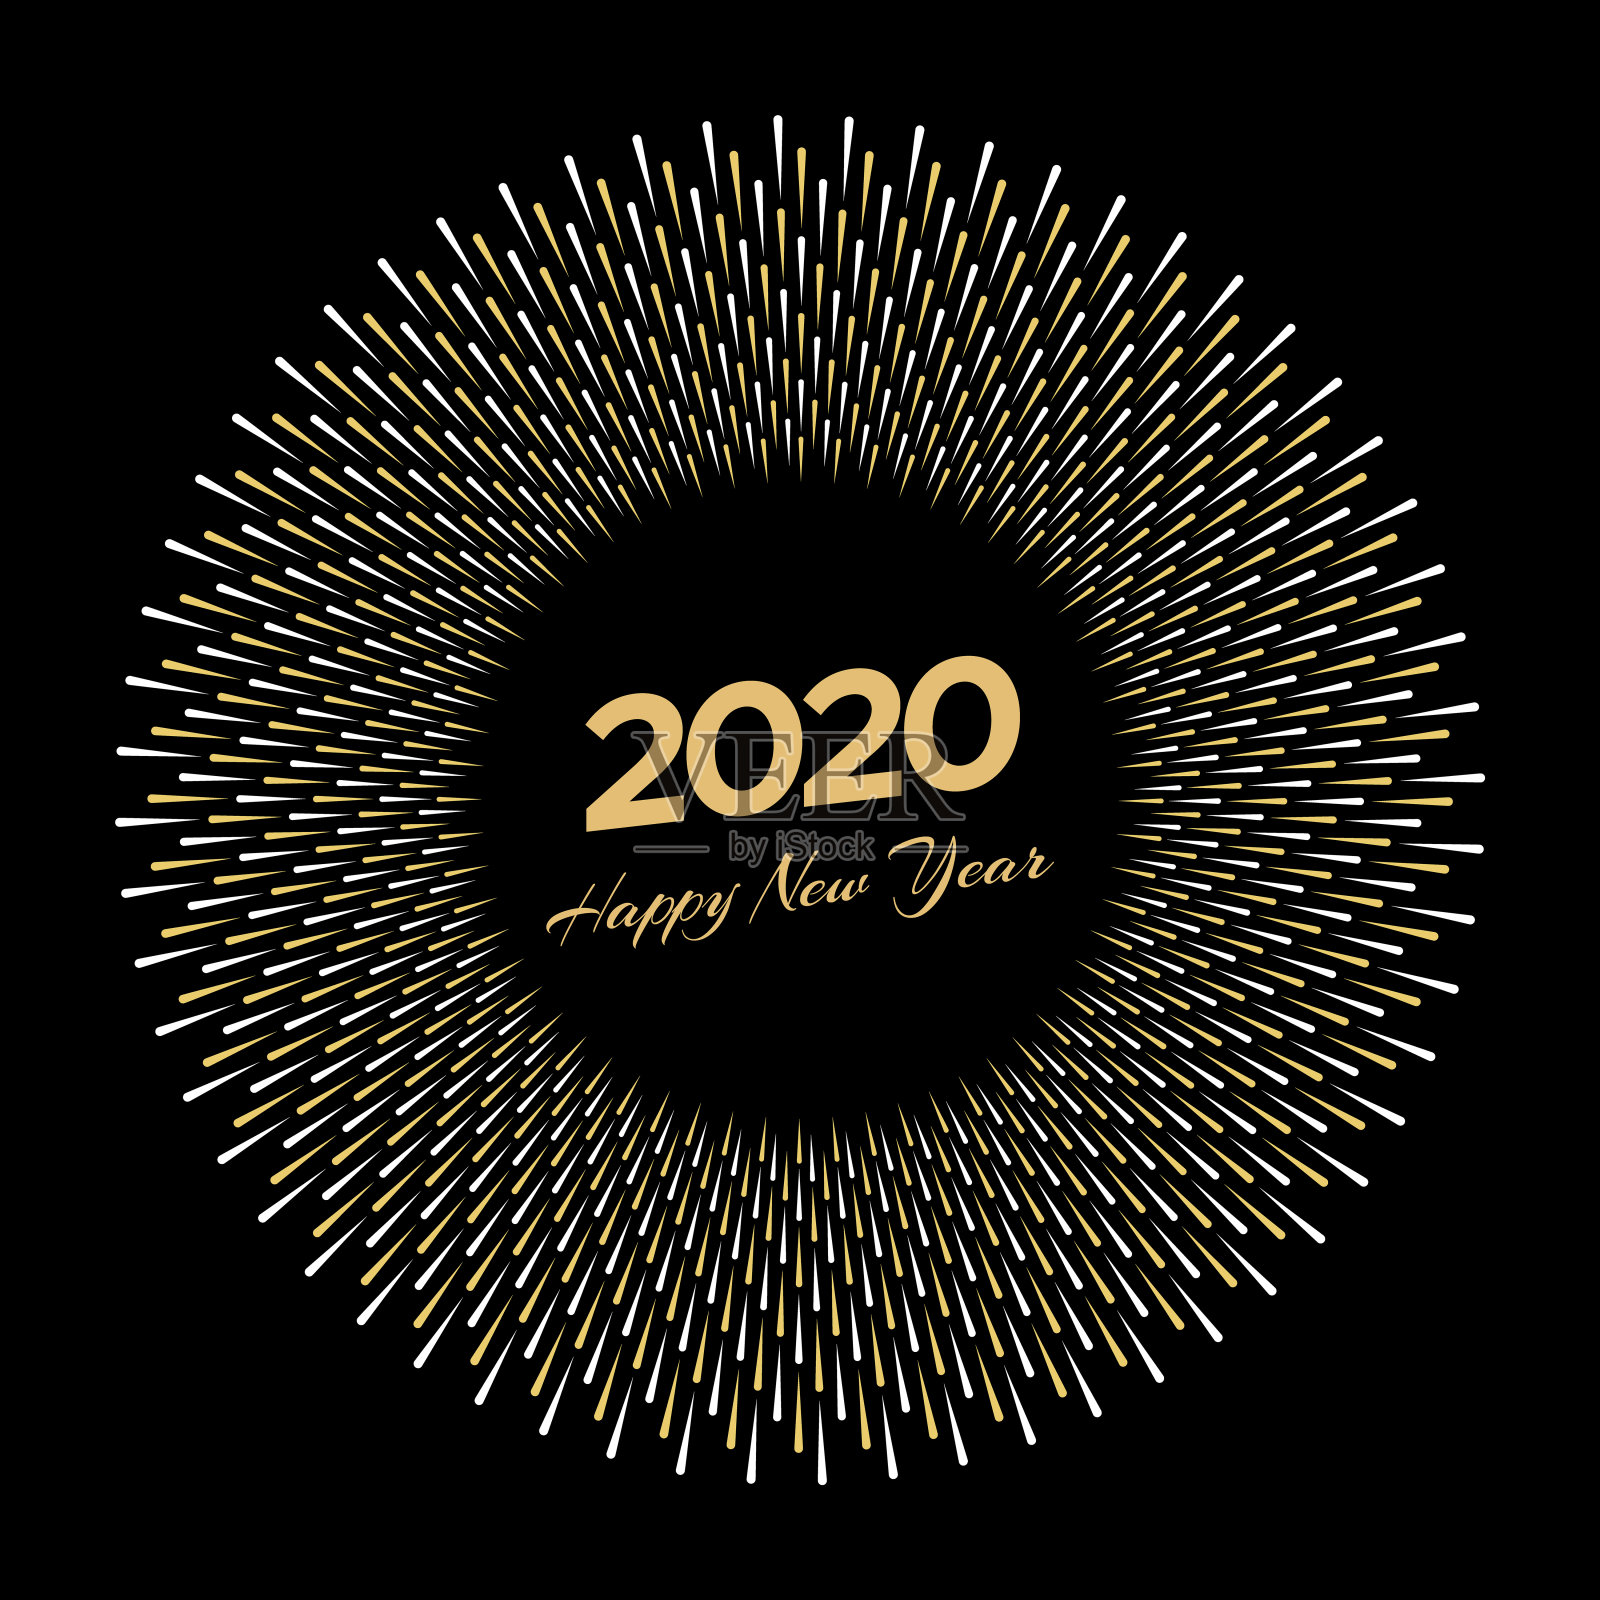 刻有“2020”和“新年快乐”字样的烟花设计模板素材